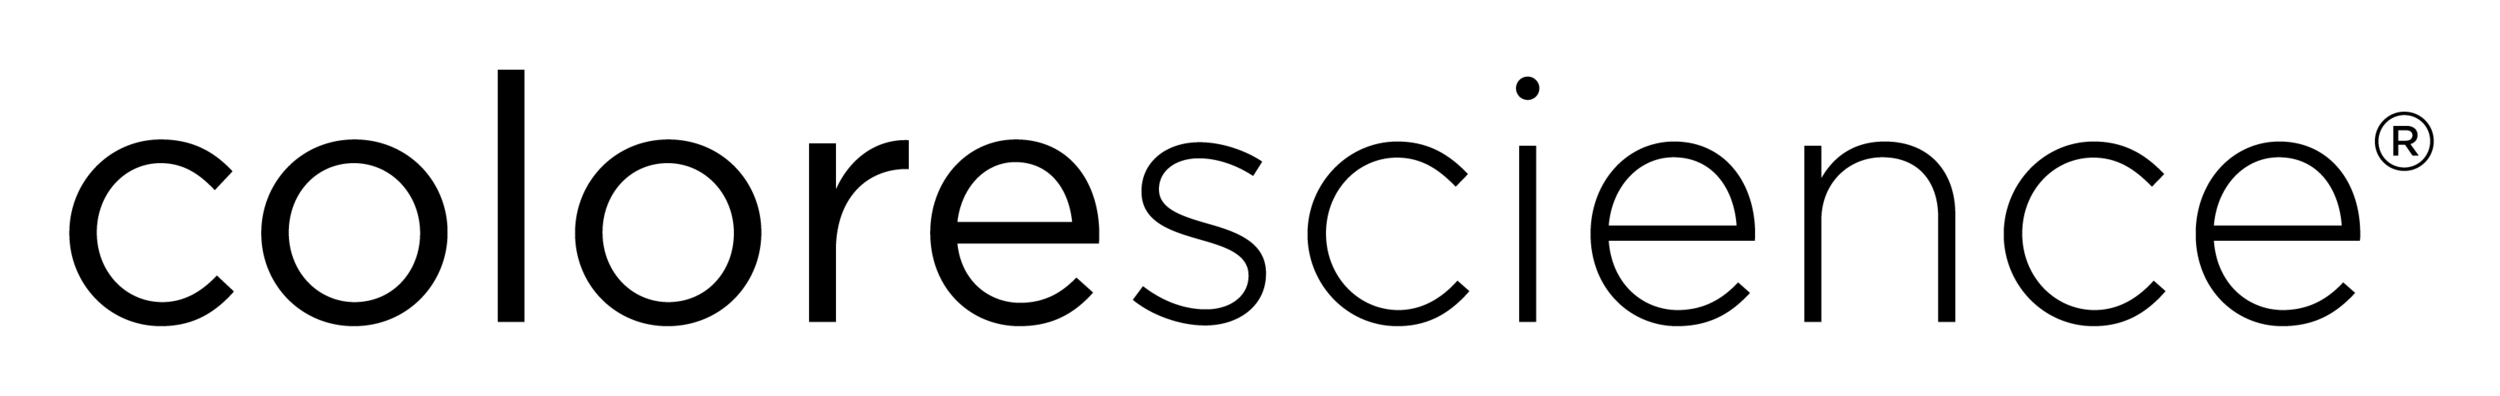 CS Logotype Black 2017-02-08.png